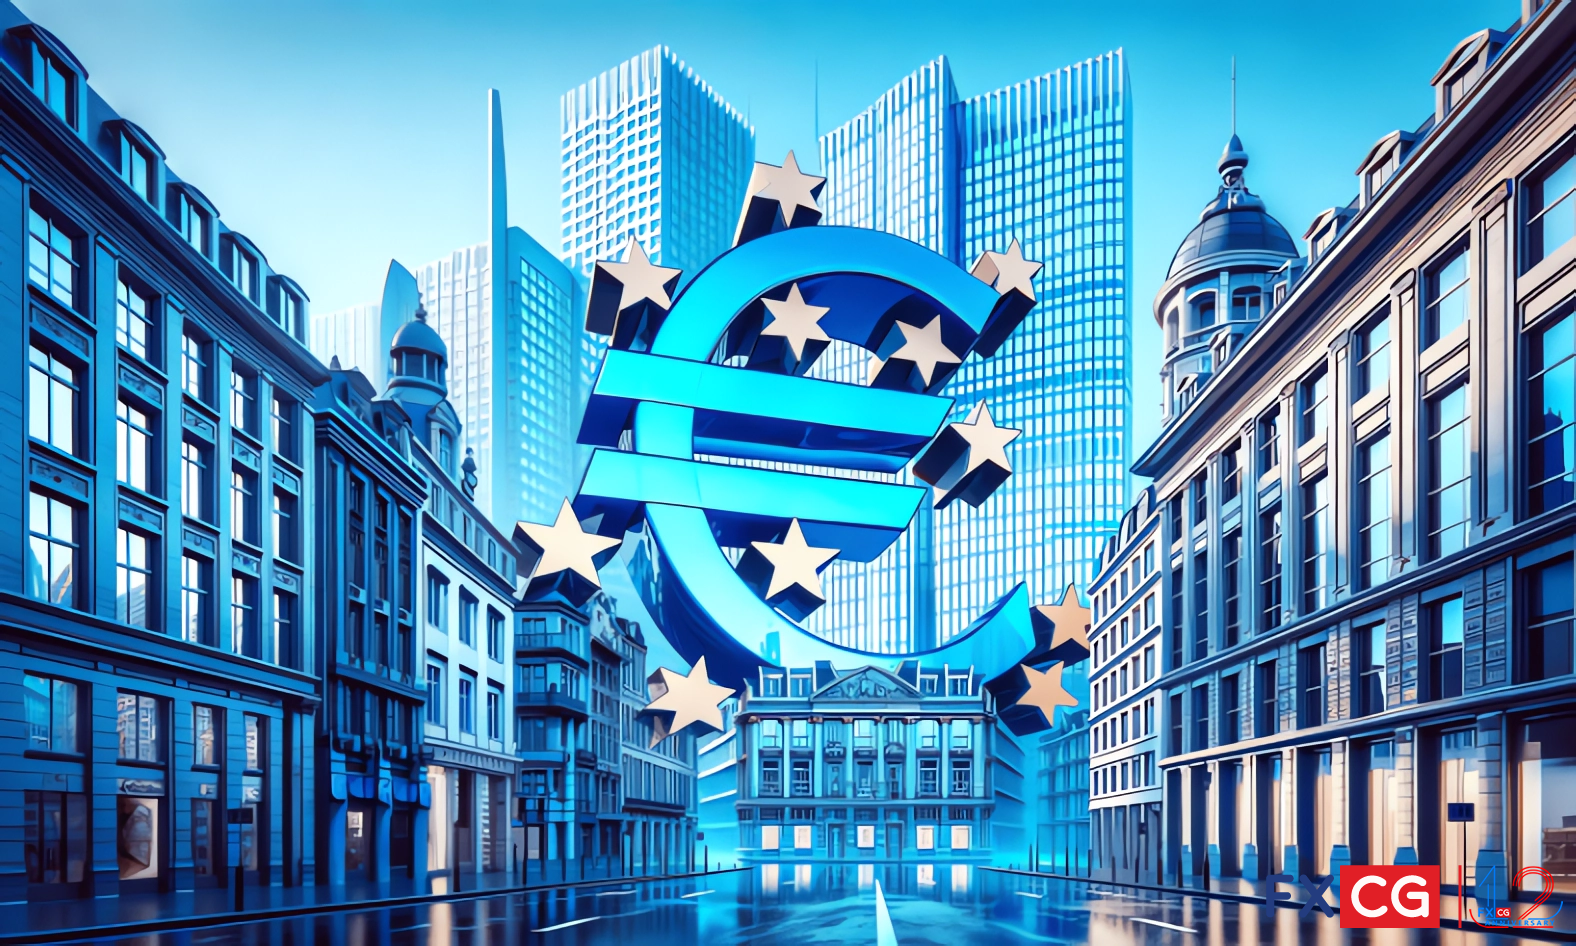 ธนาคารกลางยุโรปปรับลดอัตราดอกเบี้ย 25 จุดตามกำหนด! ปฏิเสธที่จะผูกมัดกับเส้นทางอัตราดอกเบี้ยในอนาคต